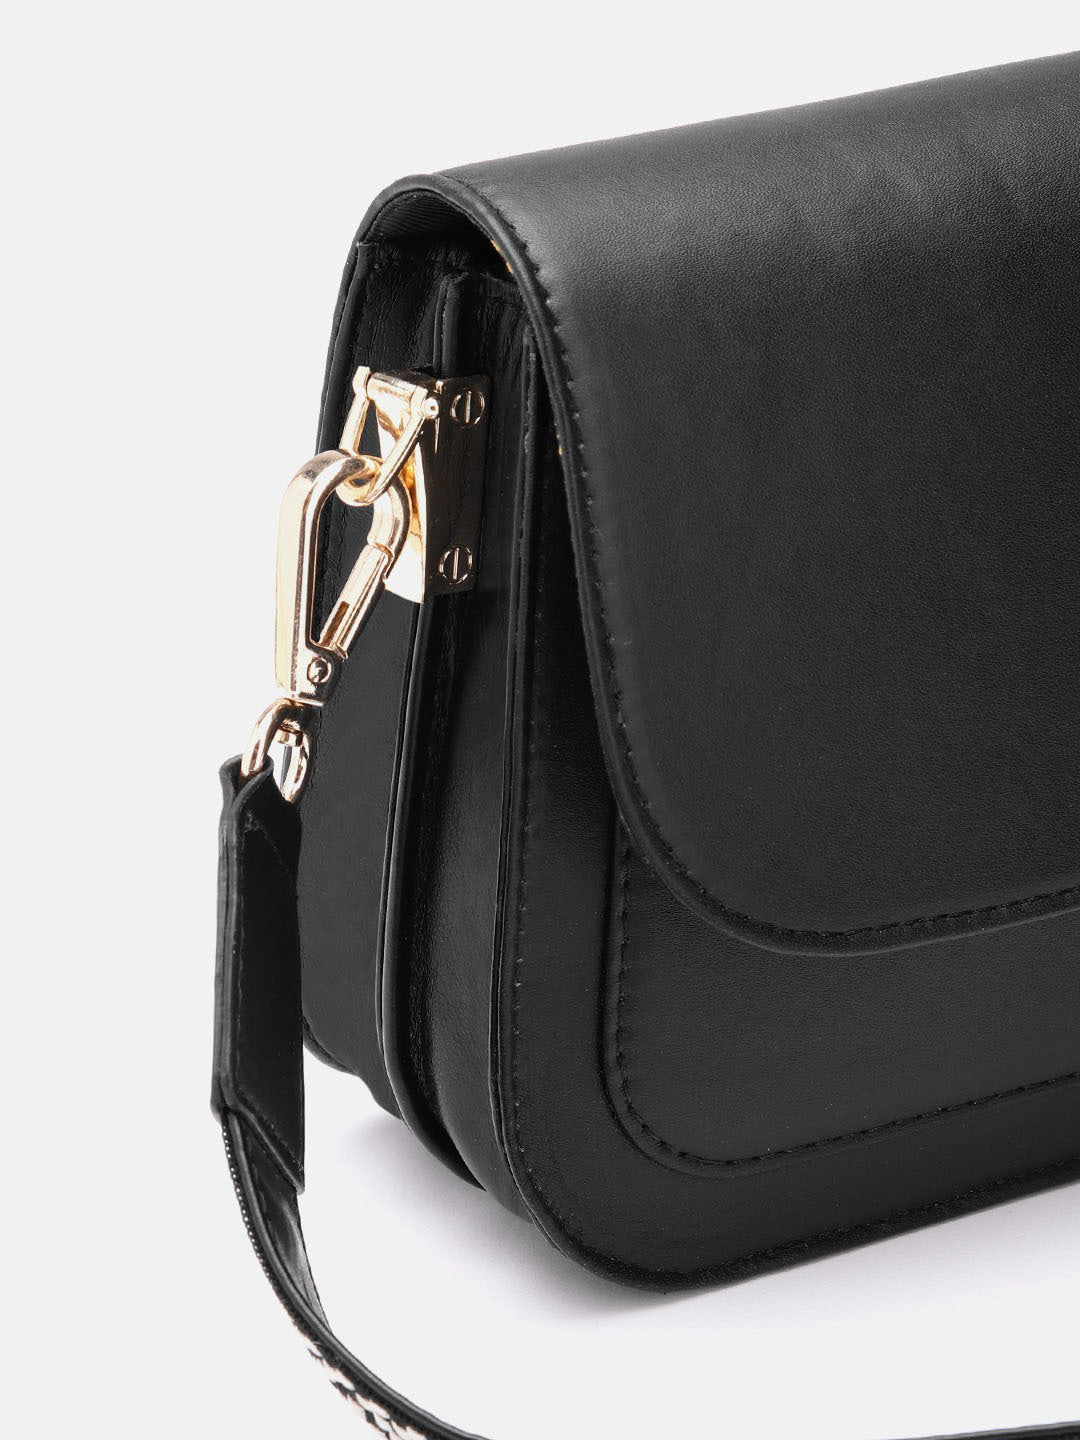 Berrylush Women Solid Black PU Detachable Sling Strap Embellished Structured Regular Sling Bag